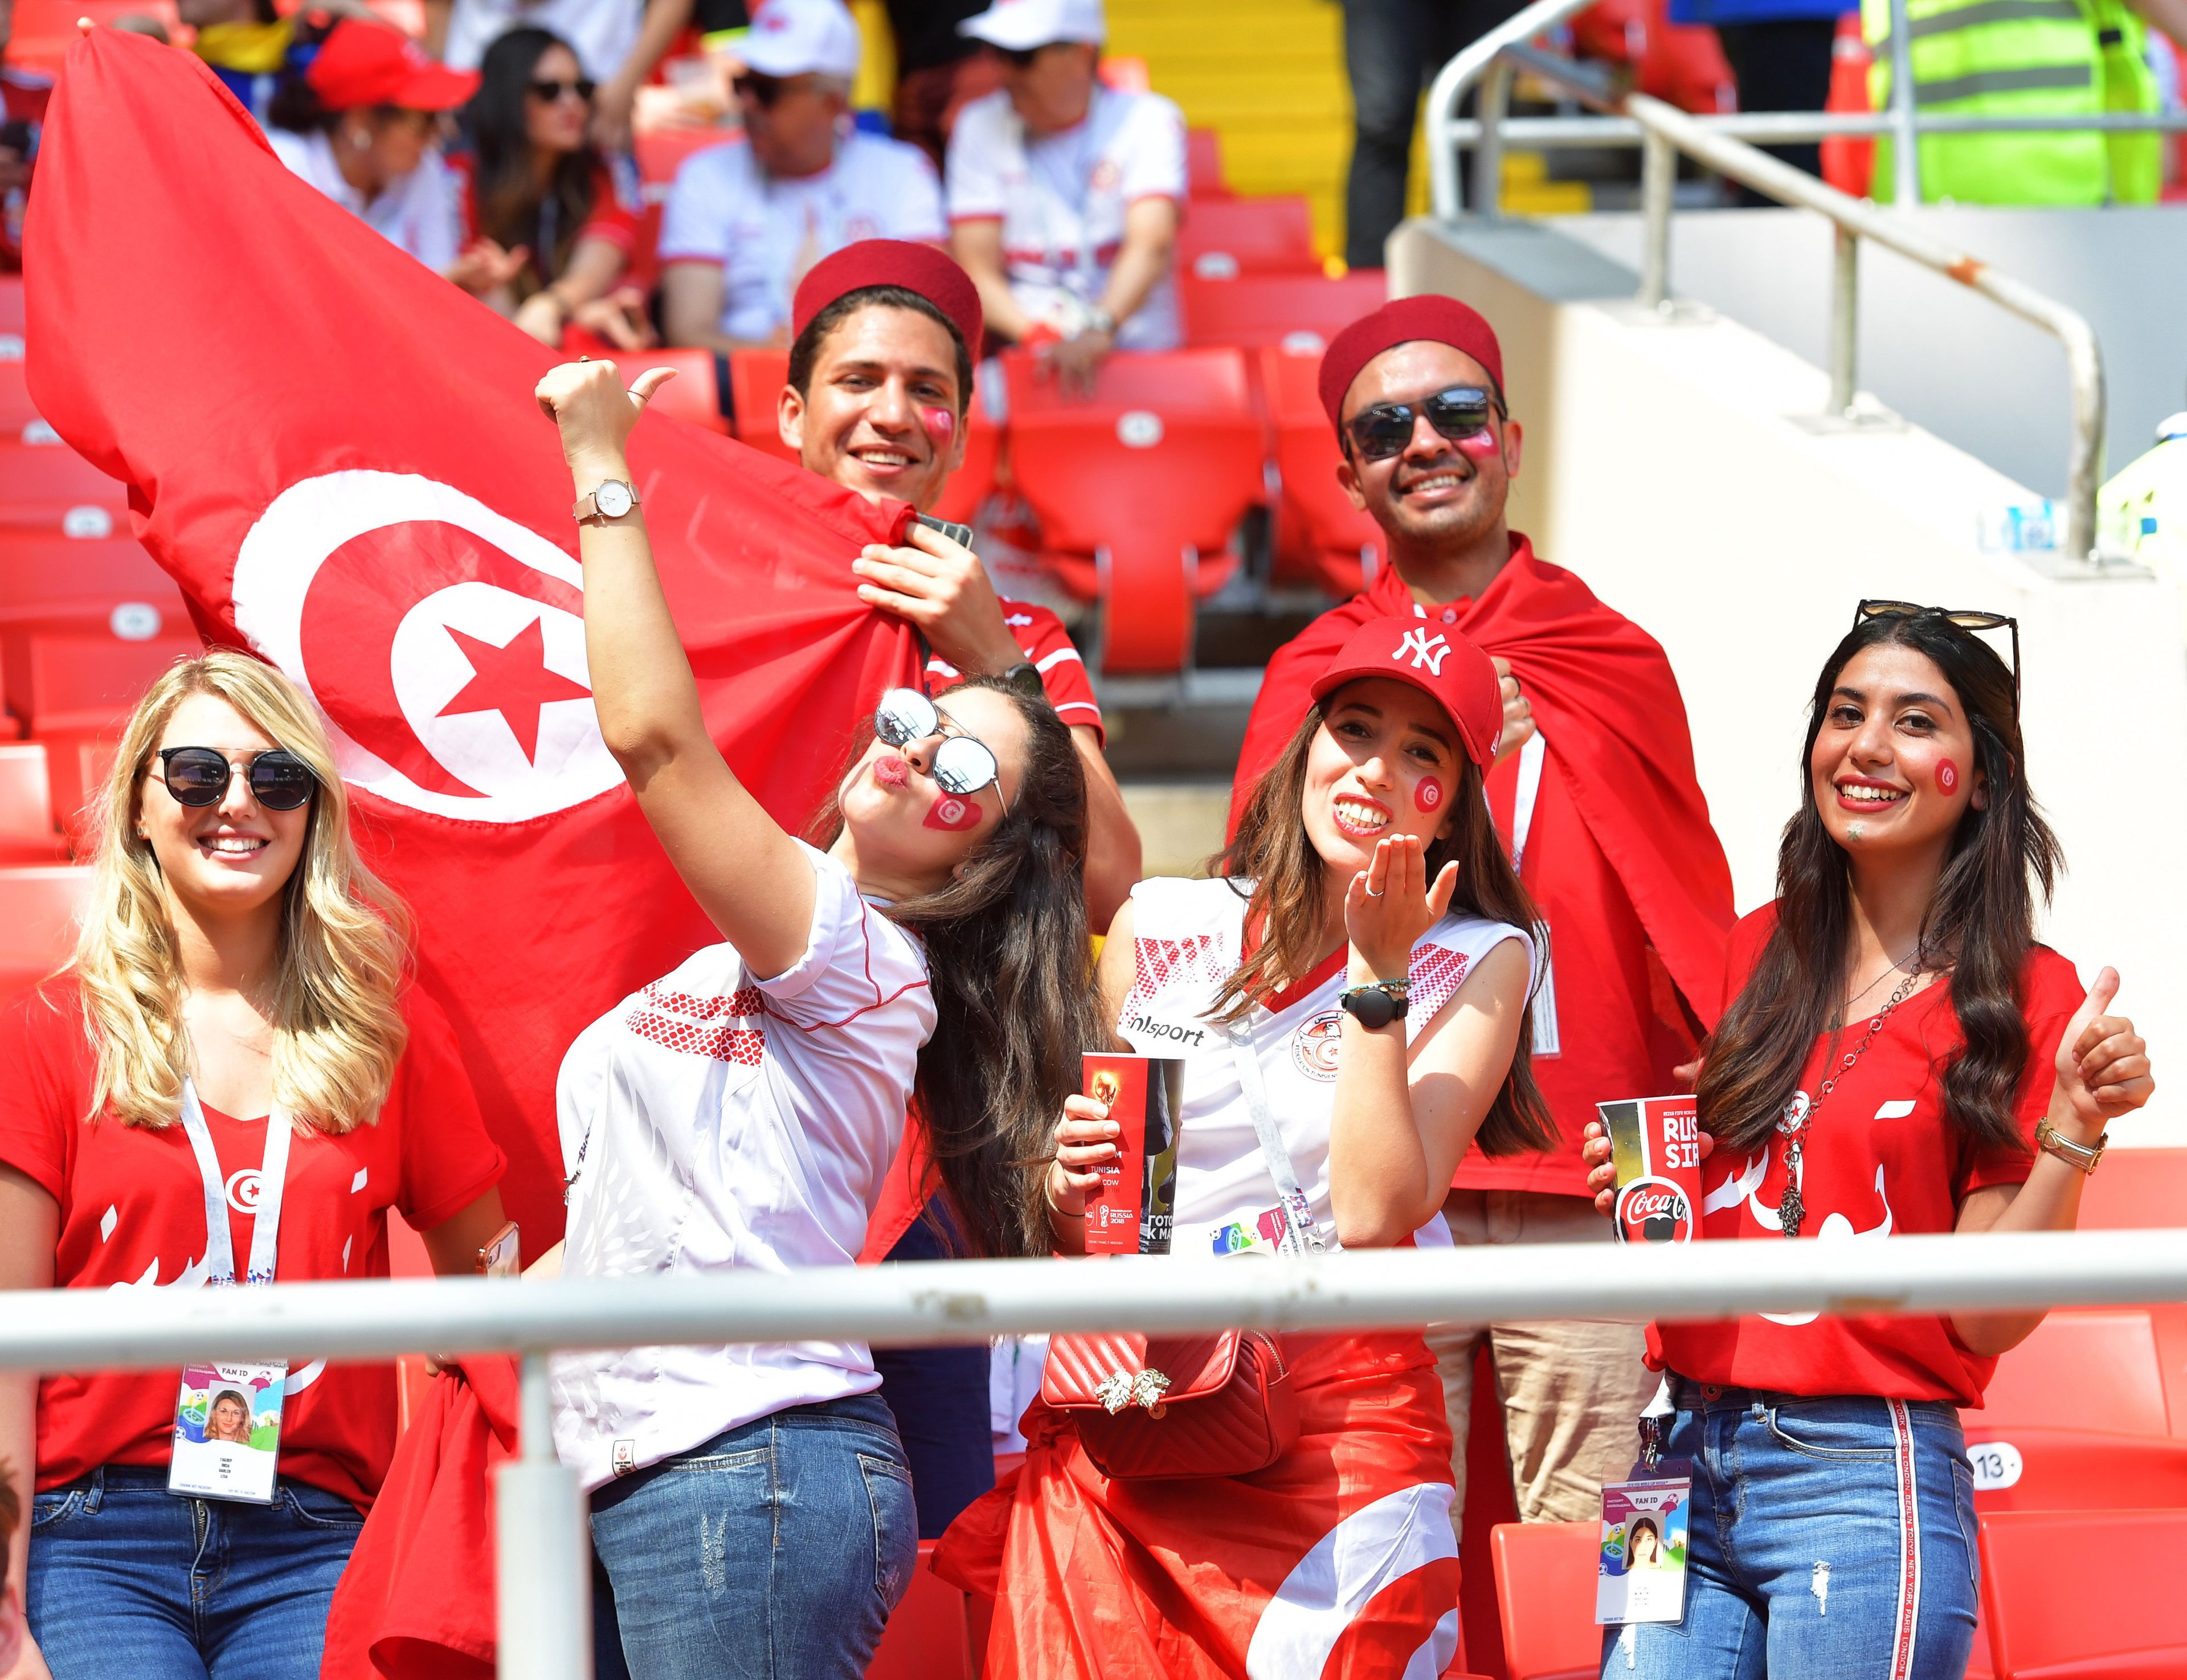 Elképzelhető, hogy a tunéziai szurkolók nem láthatják majd kedvenceiket a katari foci-vb-n (Fotó: EPA)